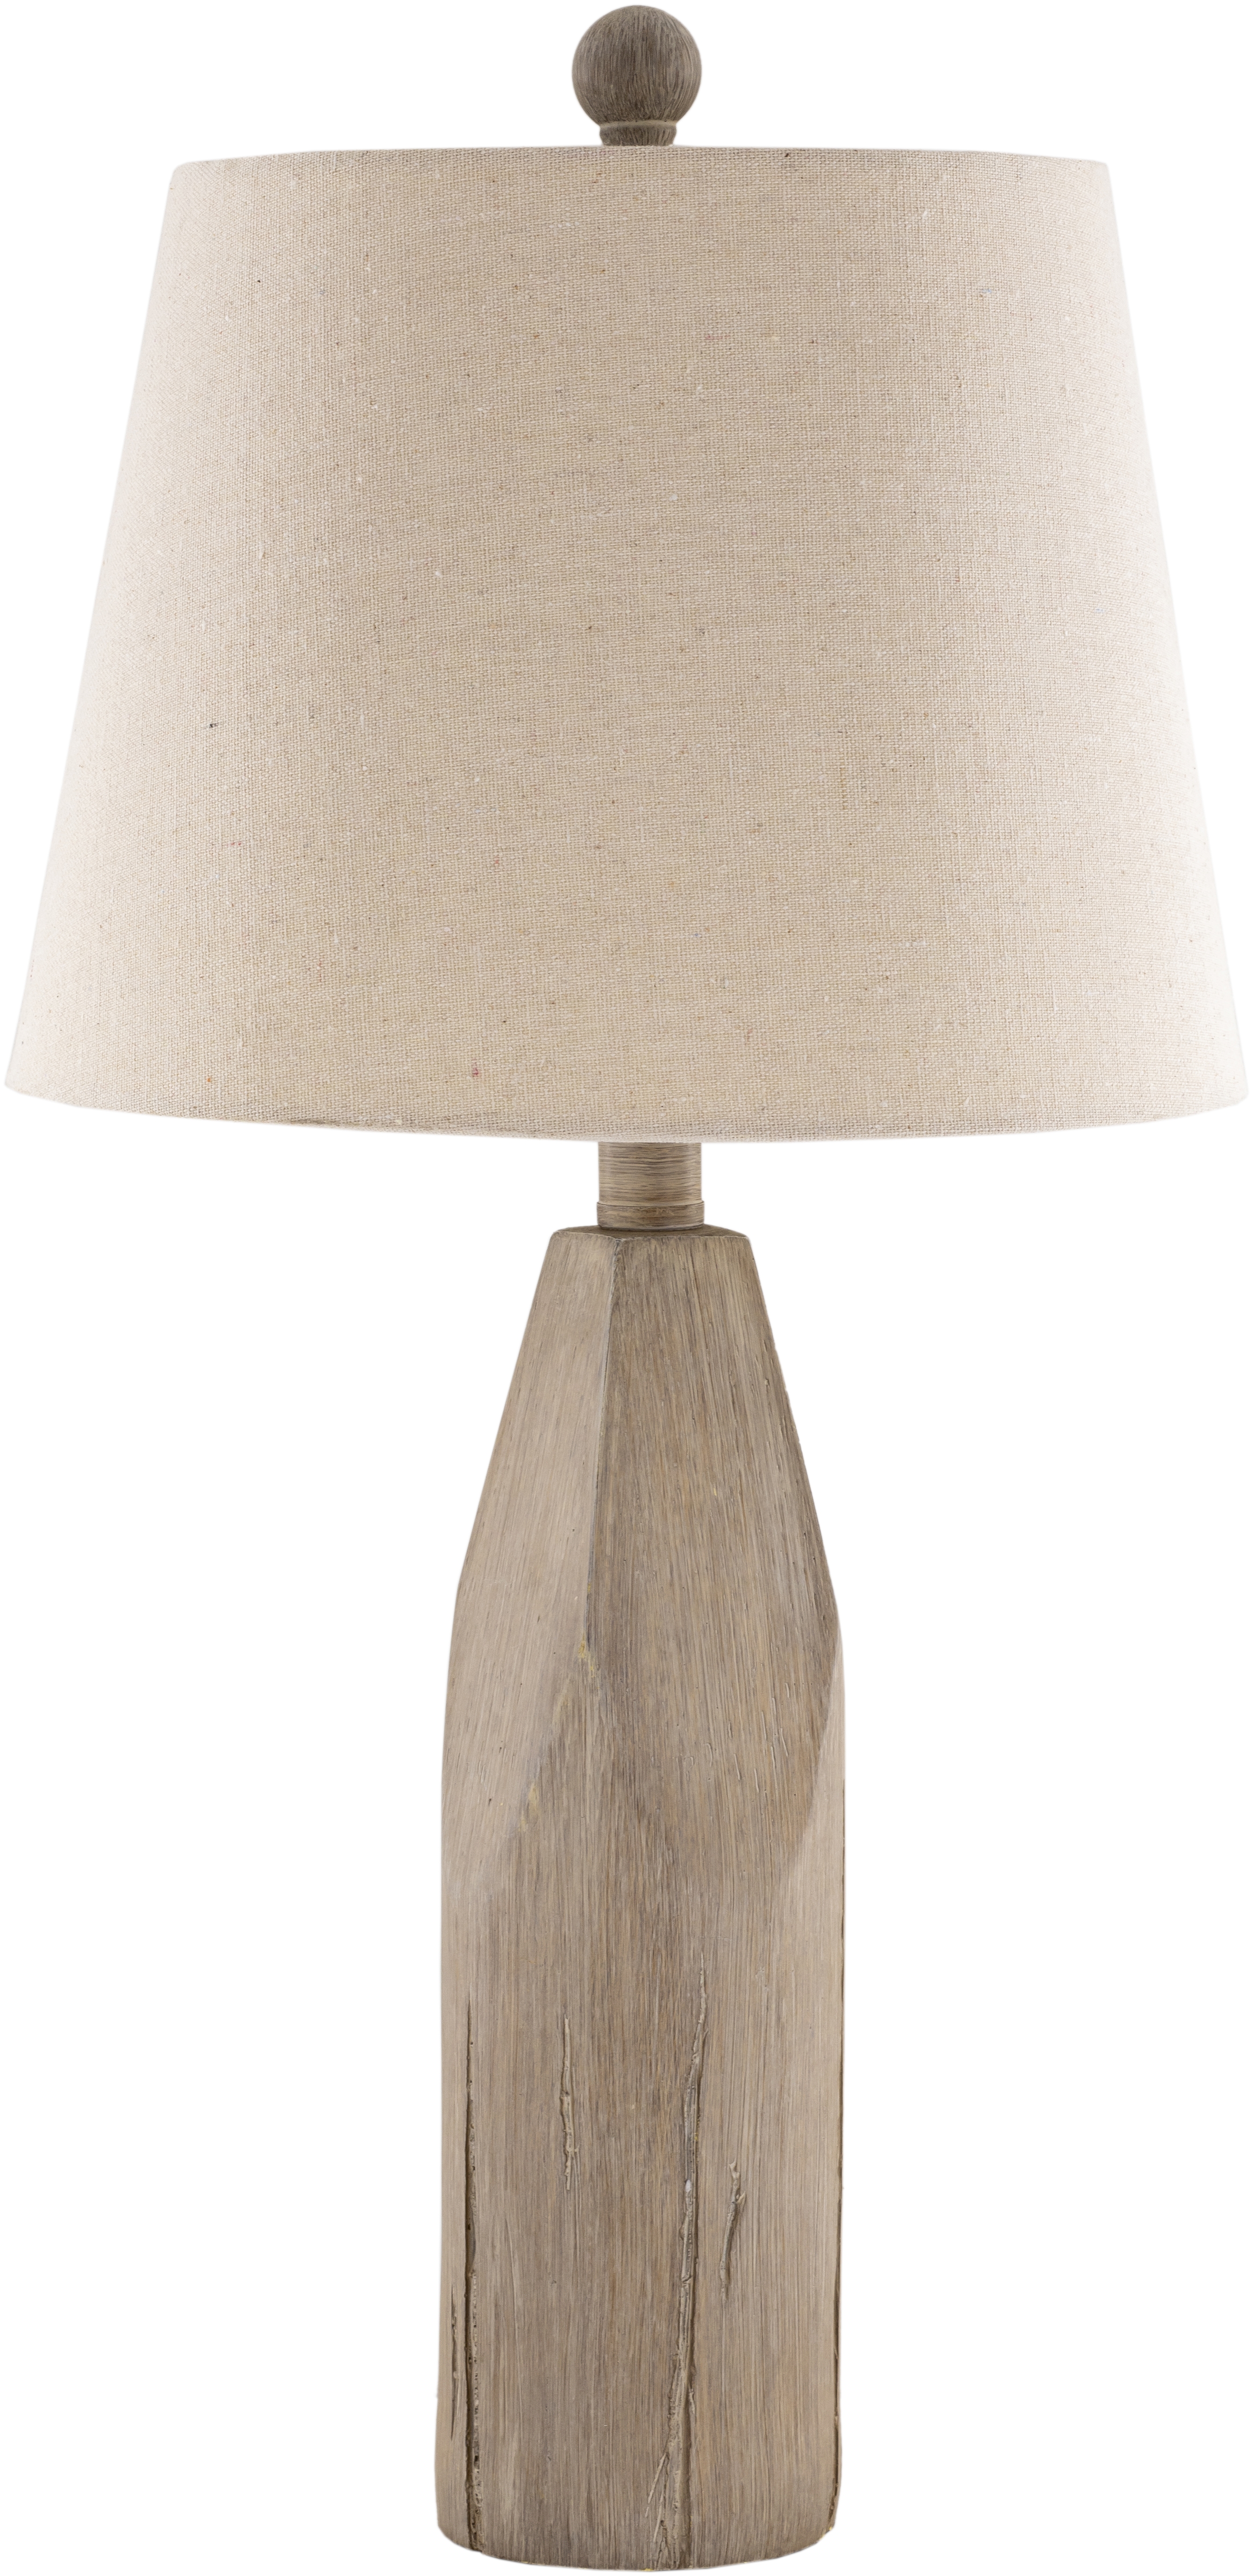 Fremont Table Lamp, 24"H x 12"W x 12"D - Image 1